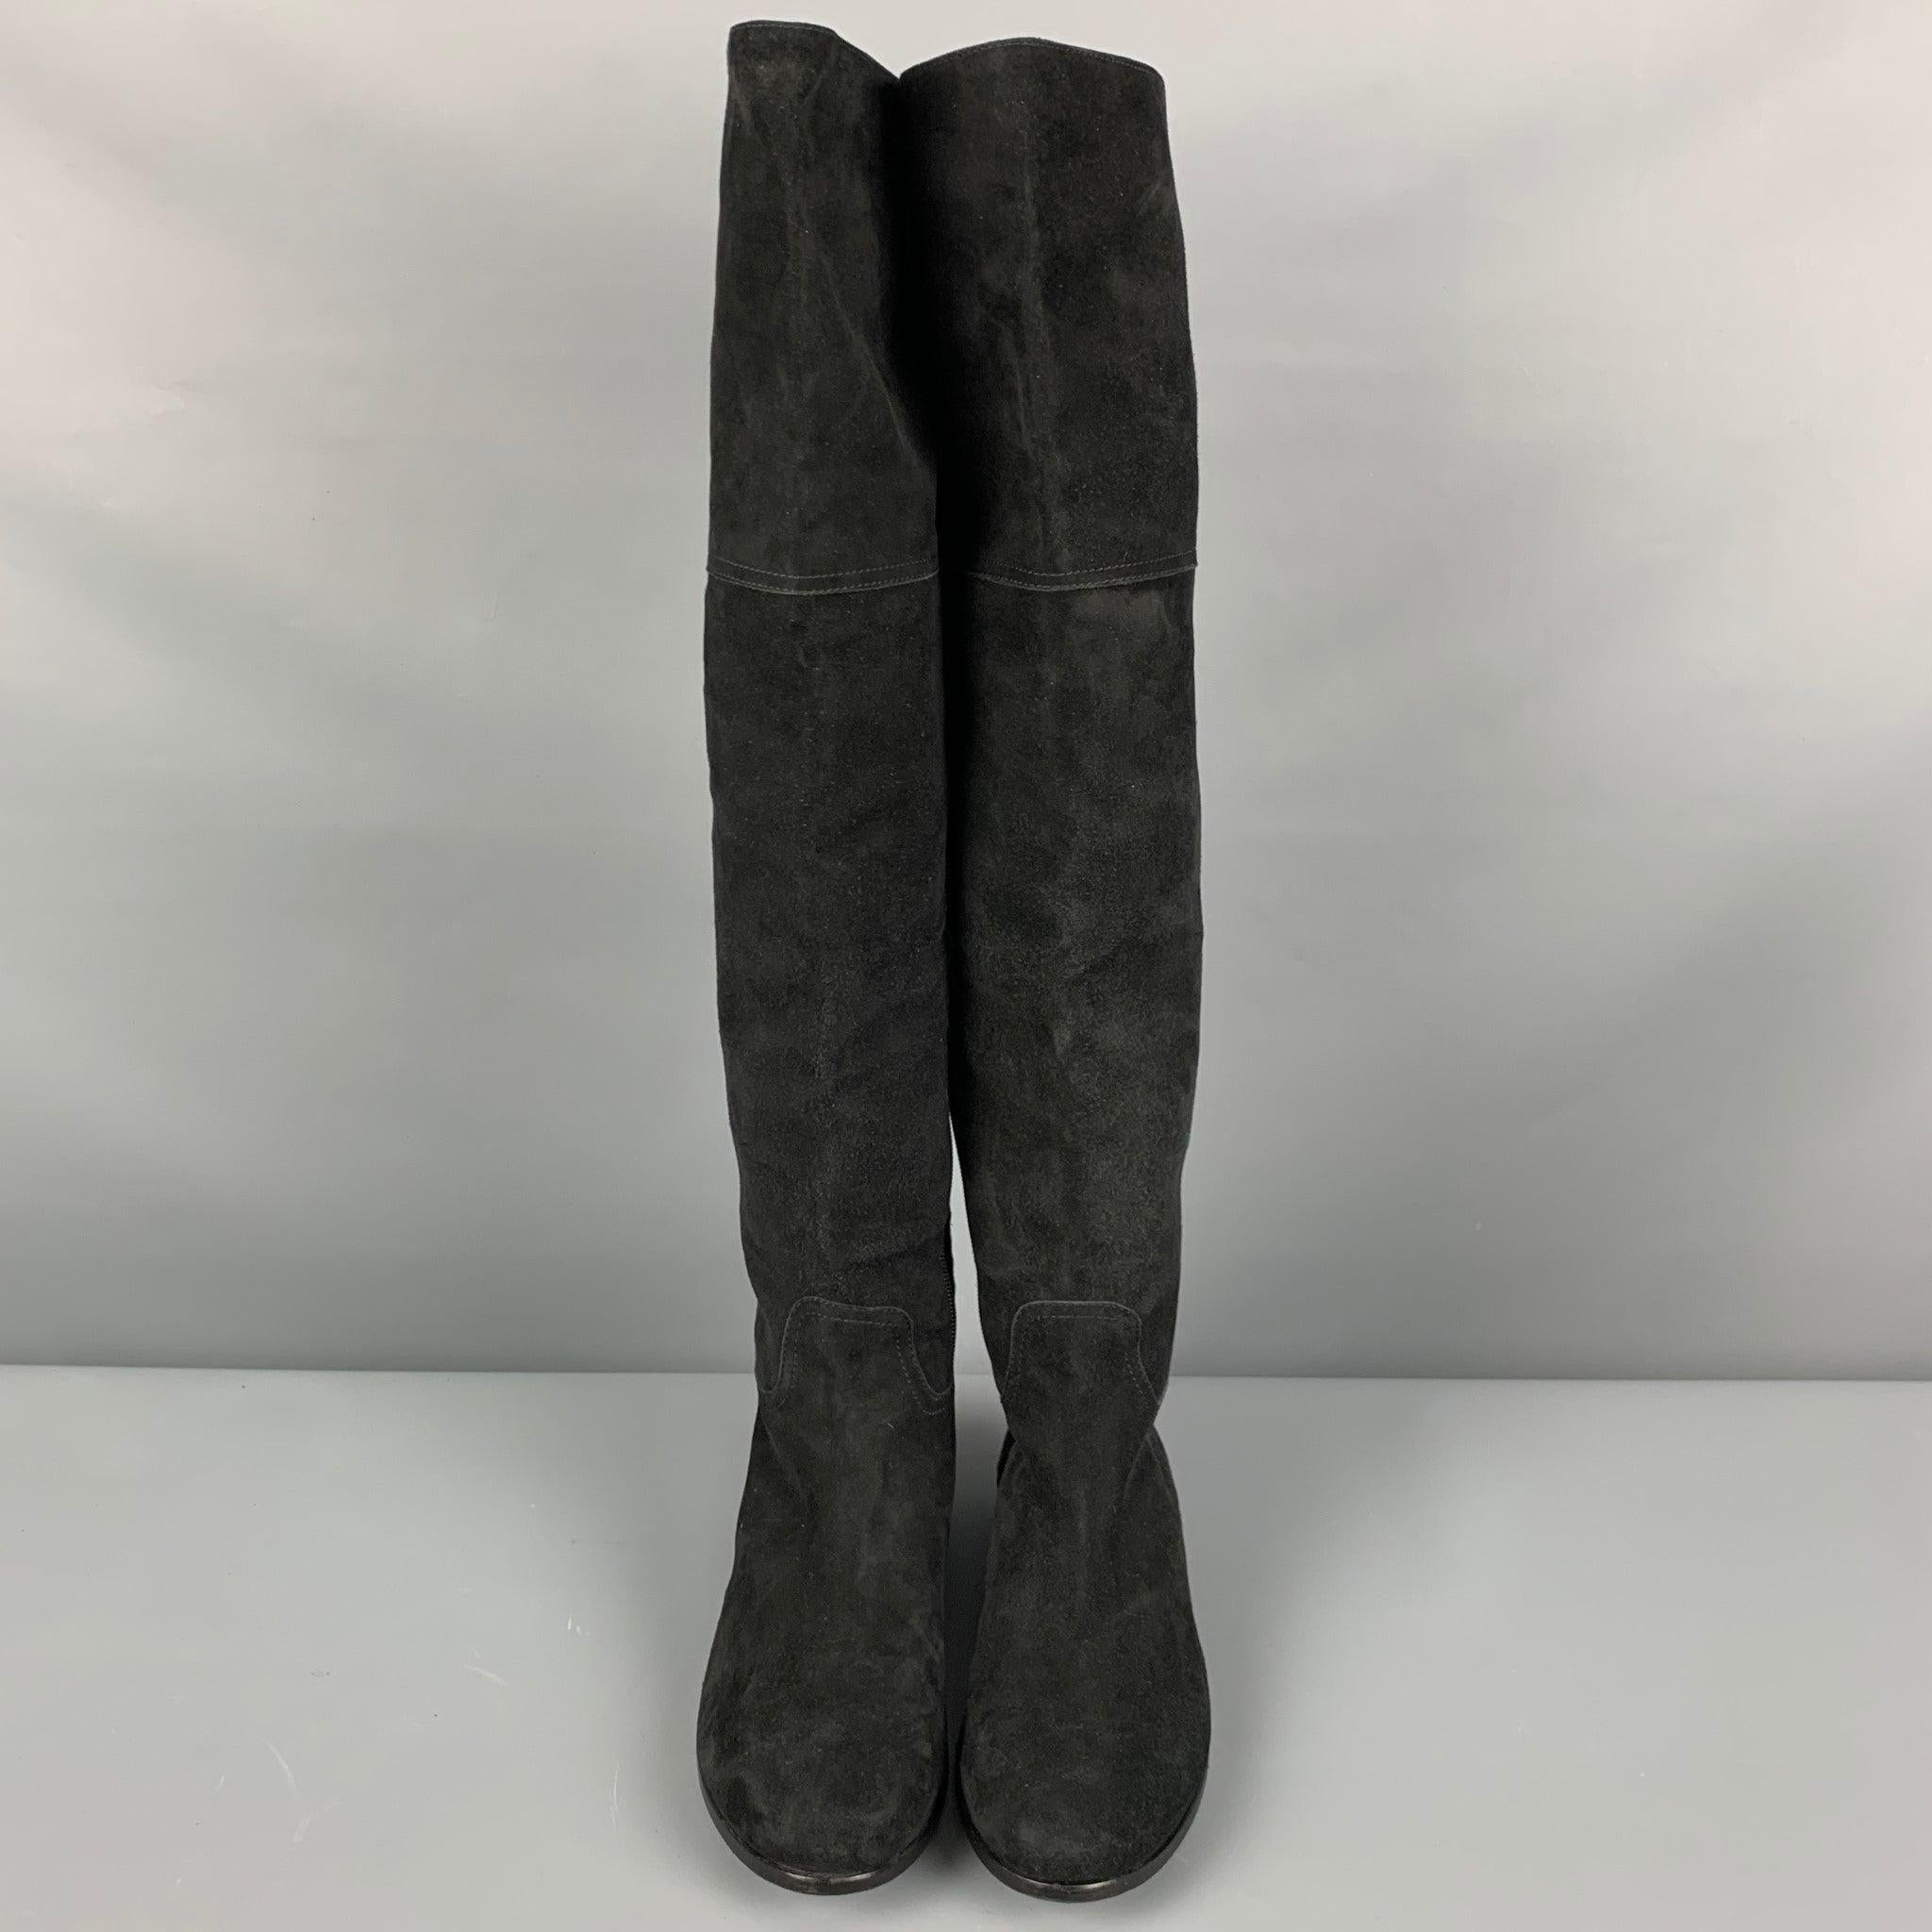 Women's AQUATALIA Size 9.5 Black Suede Boots For Sale